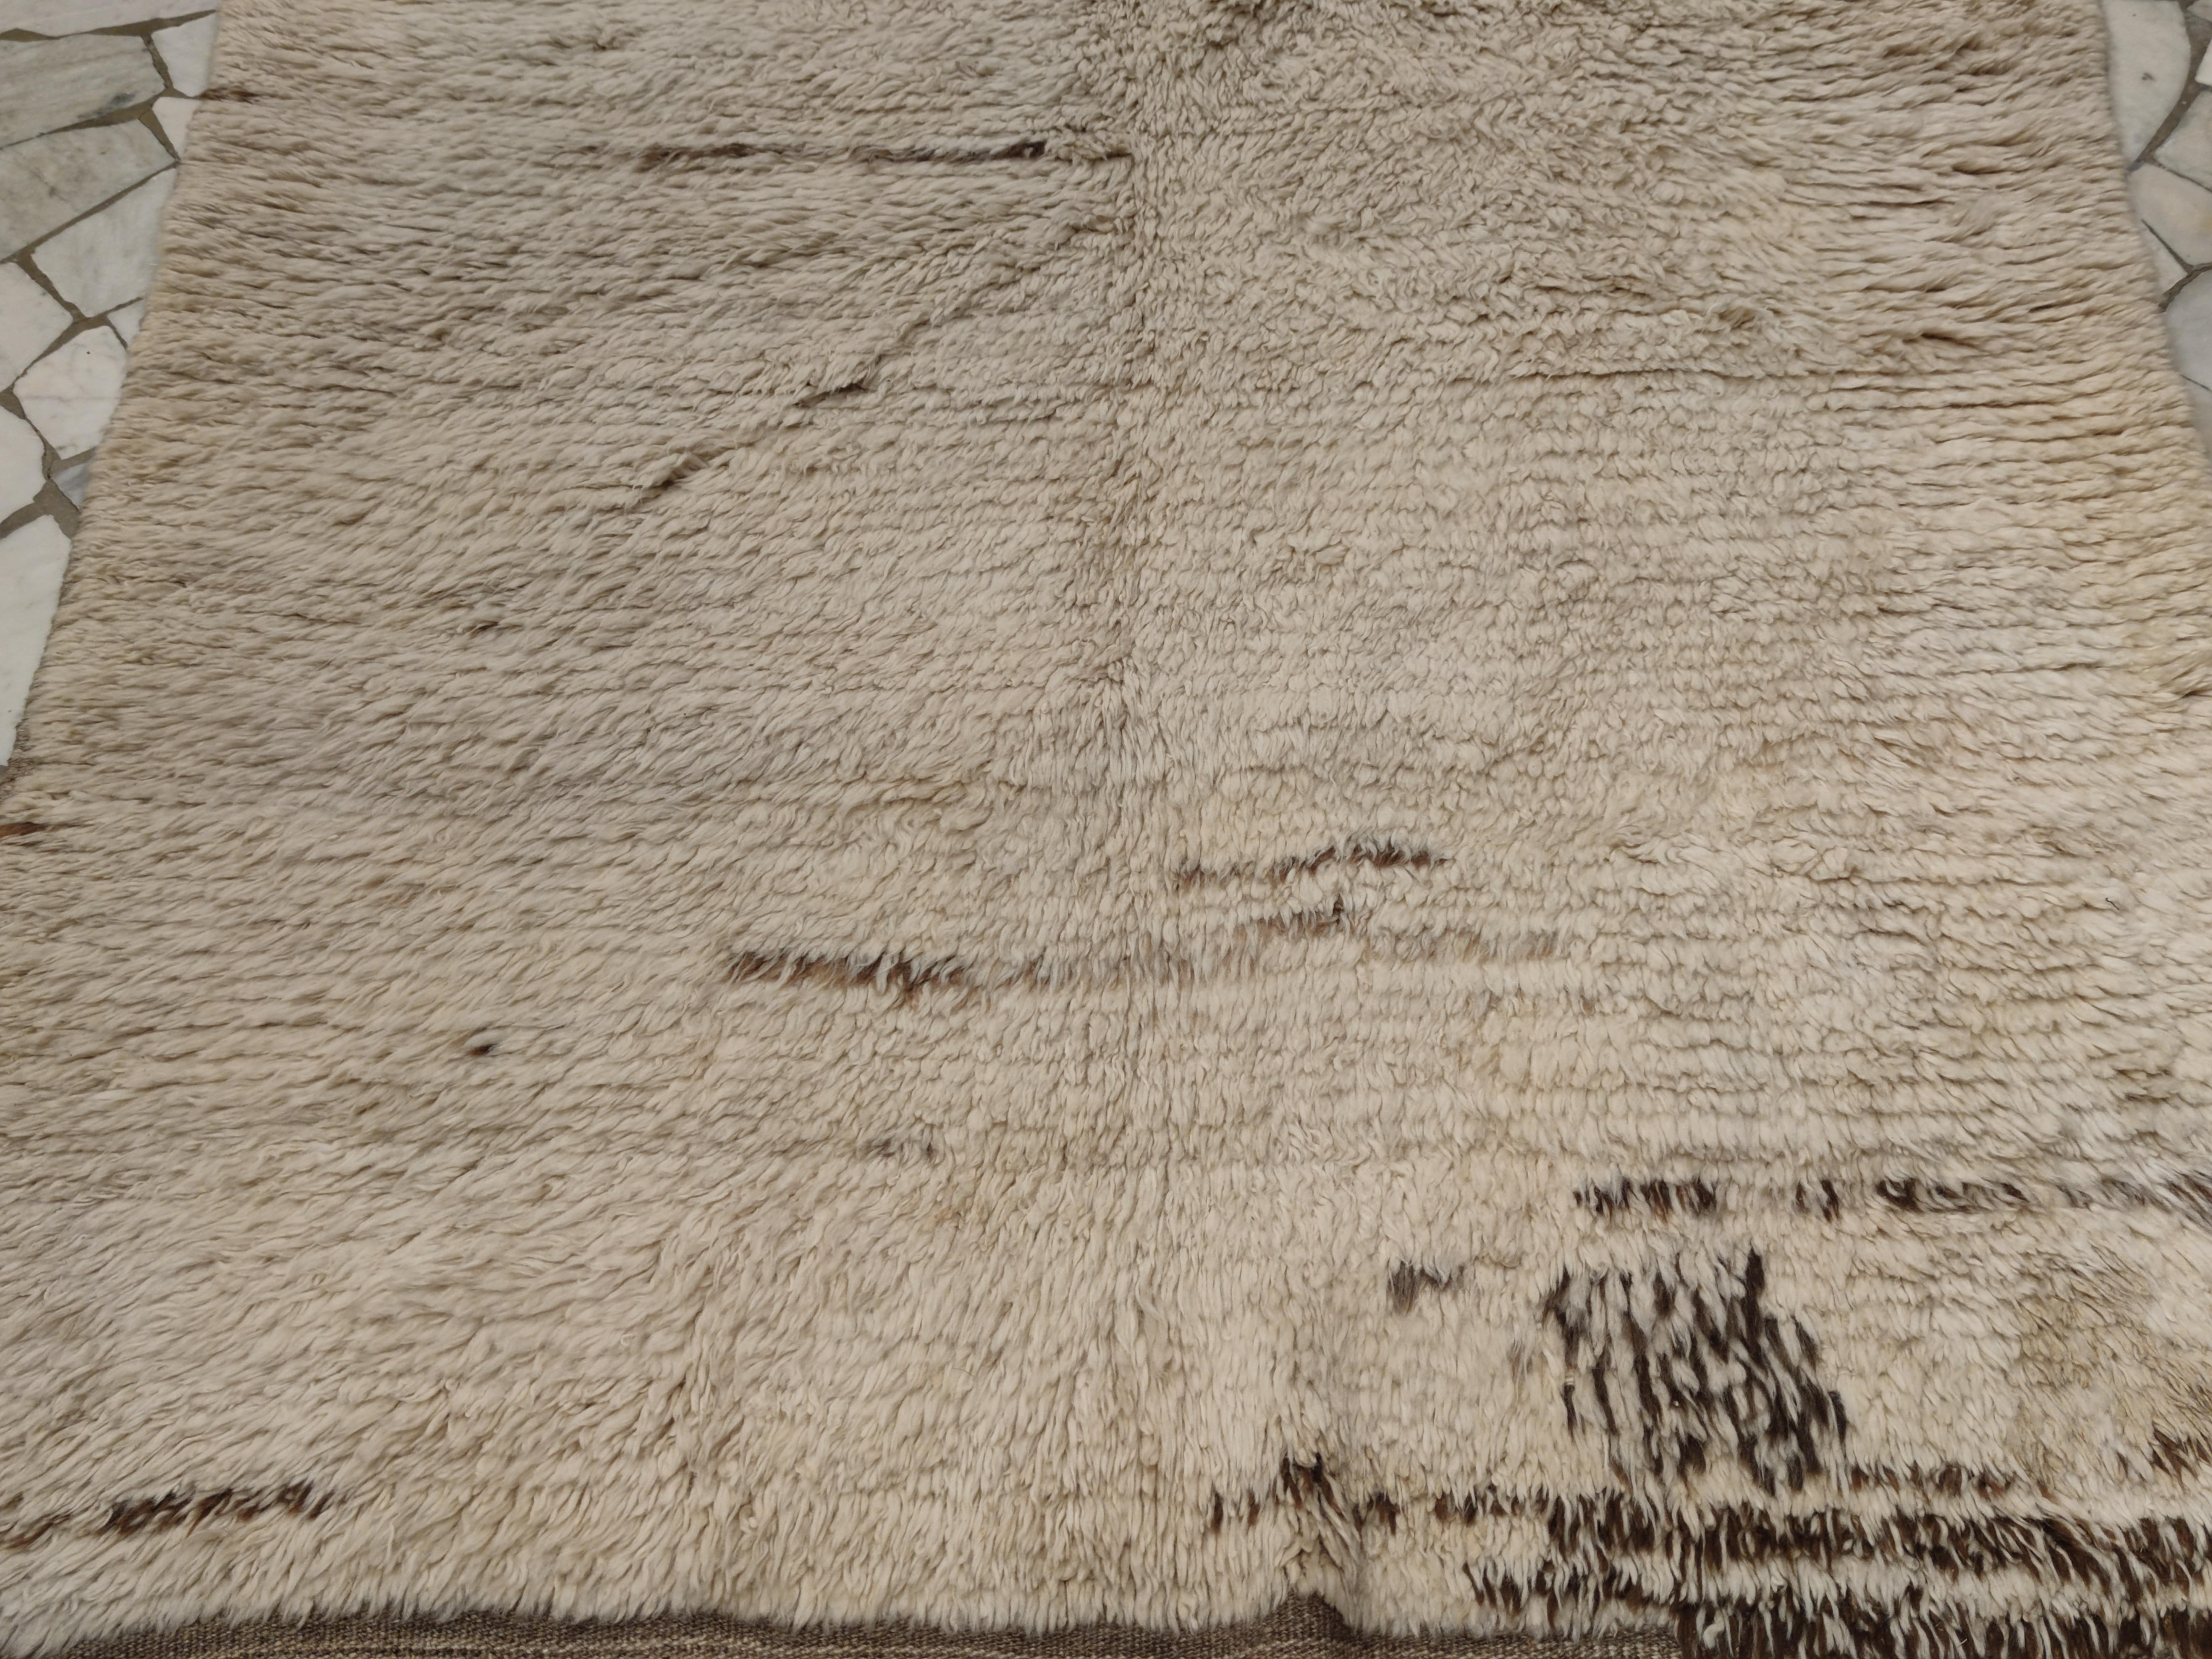 Ein seltenes und relativ frühes Exemplar eines einfarbigen Tulu-Teppichs, der sich durch ein völlig offenes Feld auszeichnet, das durch fast kalligrafische Striche aus naturbrauner Wolle verziert ist. Tulus dieses Typs gehören zu den frühesten